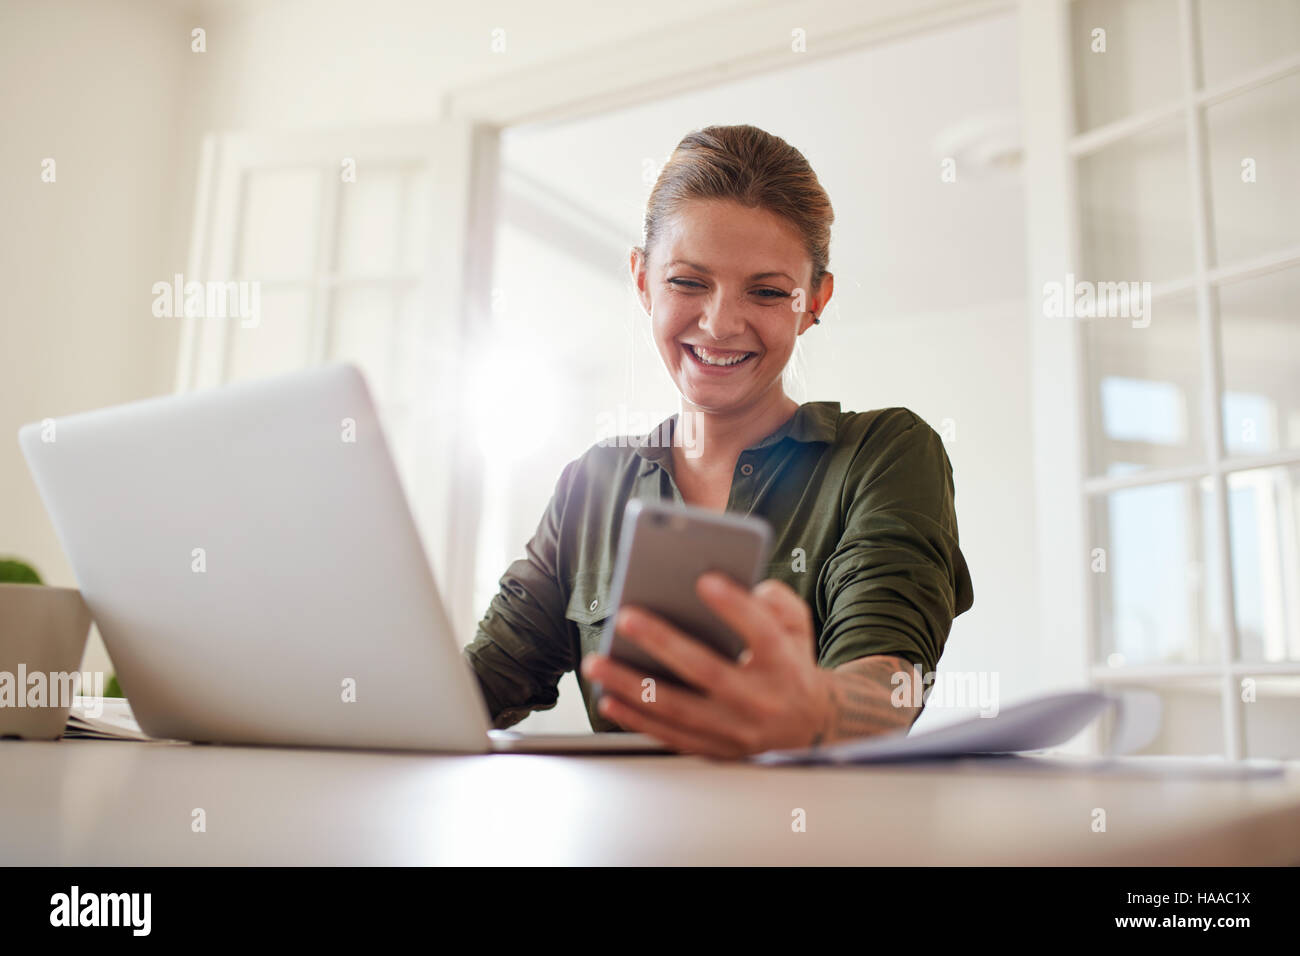 Schuss der fröhliche junge Frau mit Handy während der Arbeit am Laptop. Weibliche Textnachricht auf ihrem Smartphone lesen und Lächeln auf den Lippen. Stockfoto